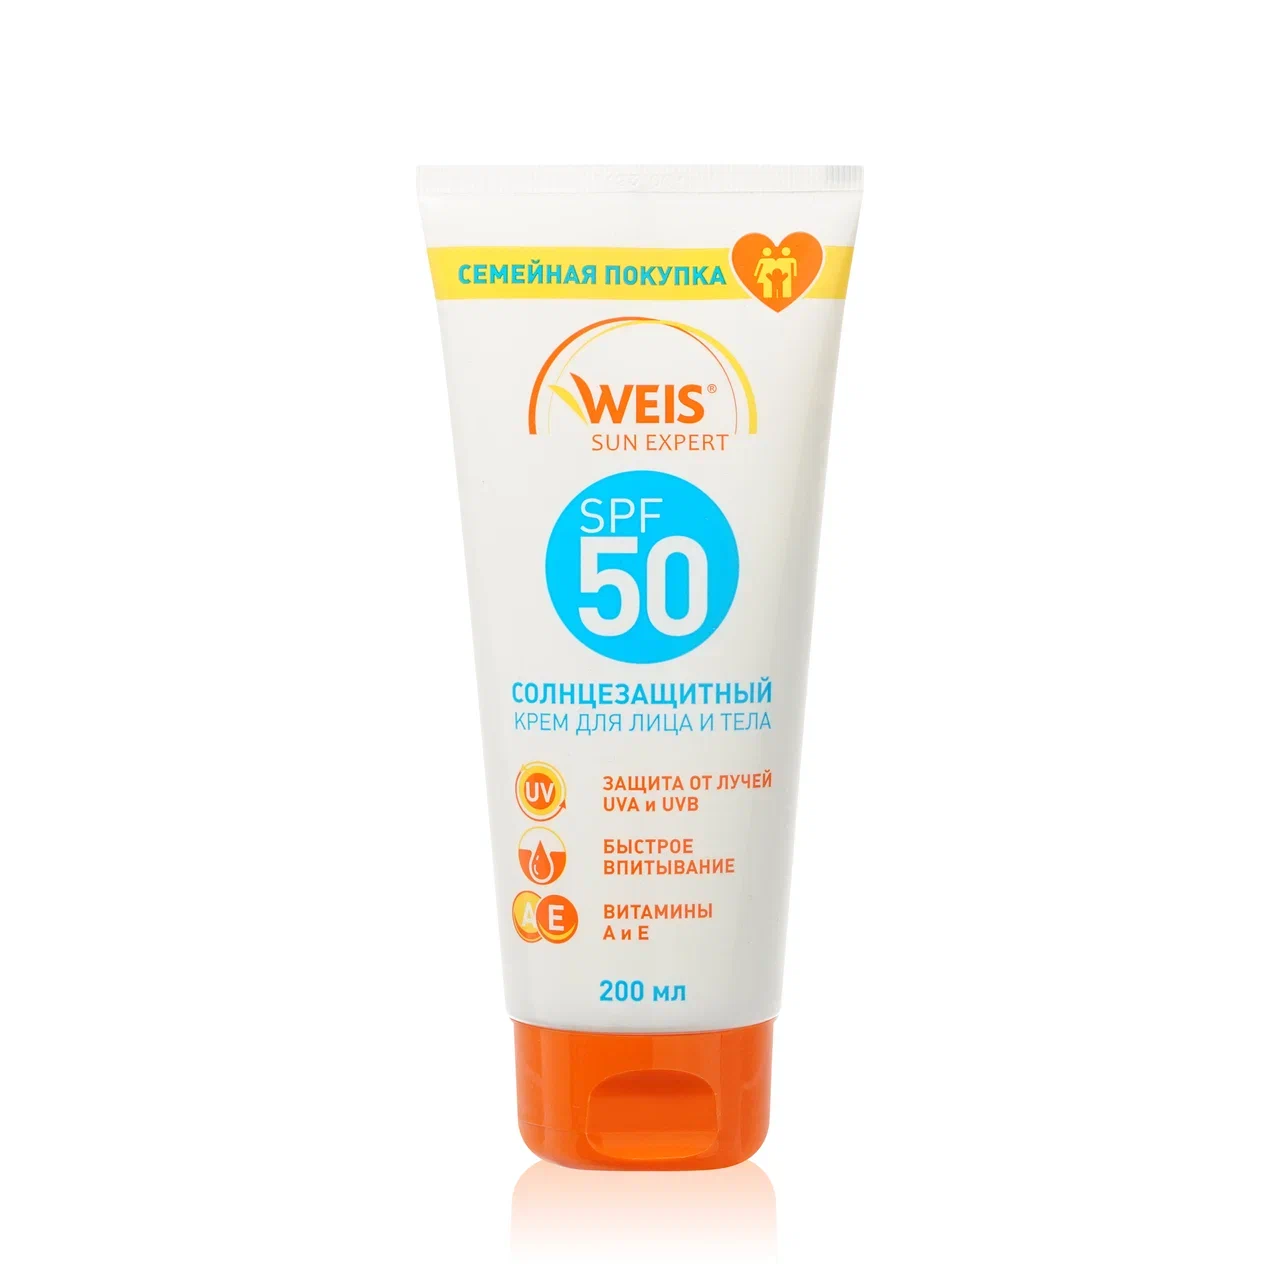 Солнцезащитный крем для лица и тела WEIS Sun Expert.jpg